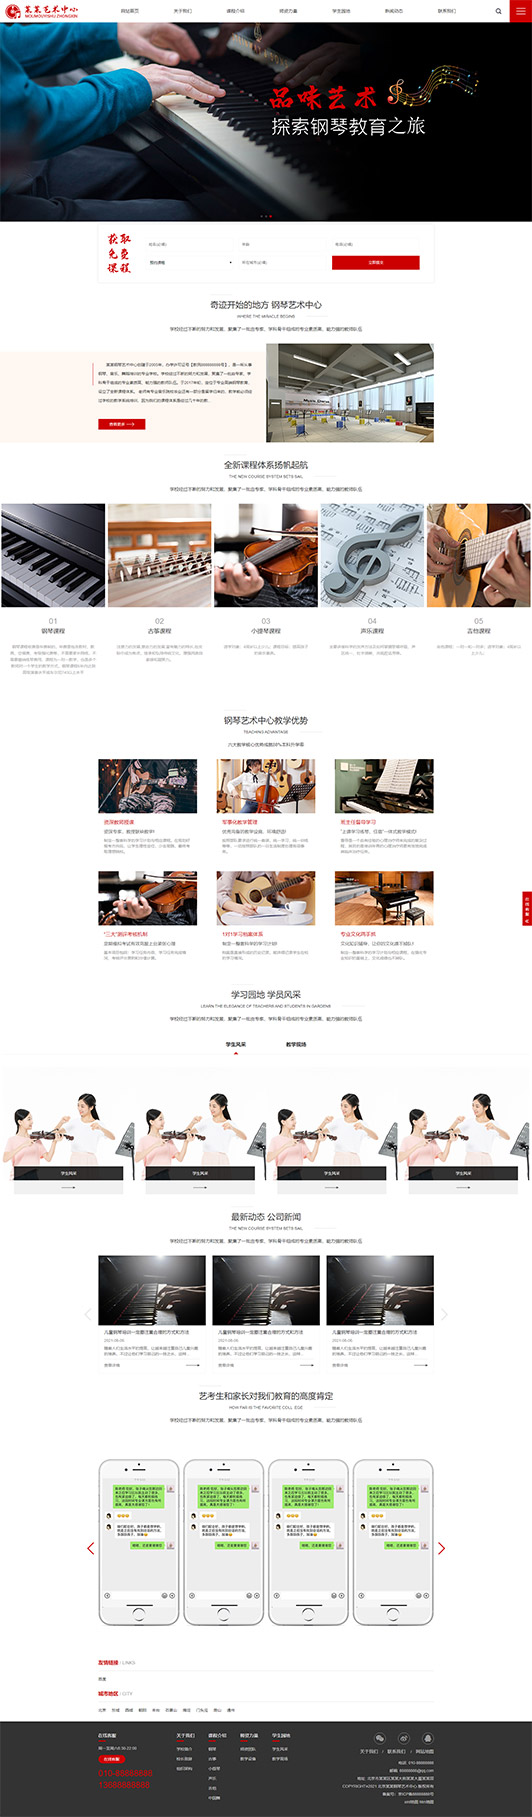 哈尔滨钢琴艺术培训公司响应式企业网站